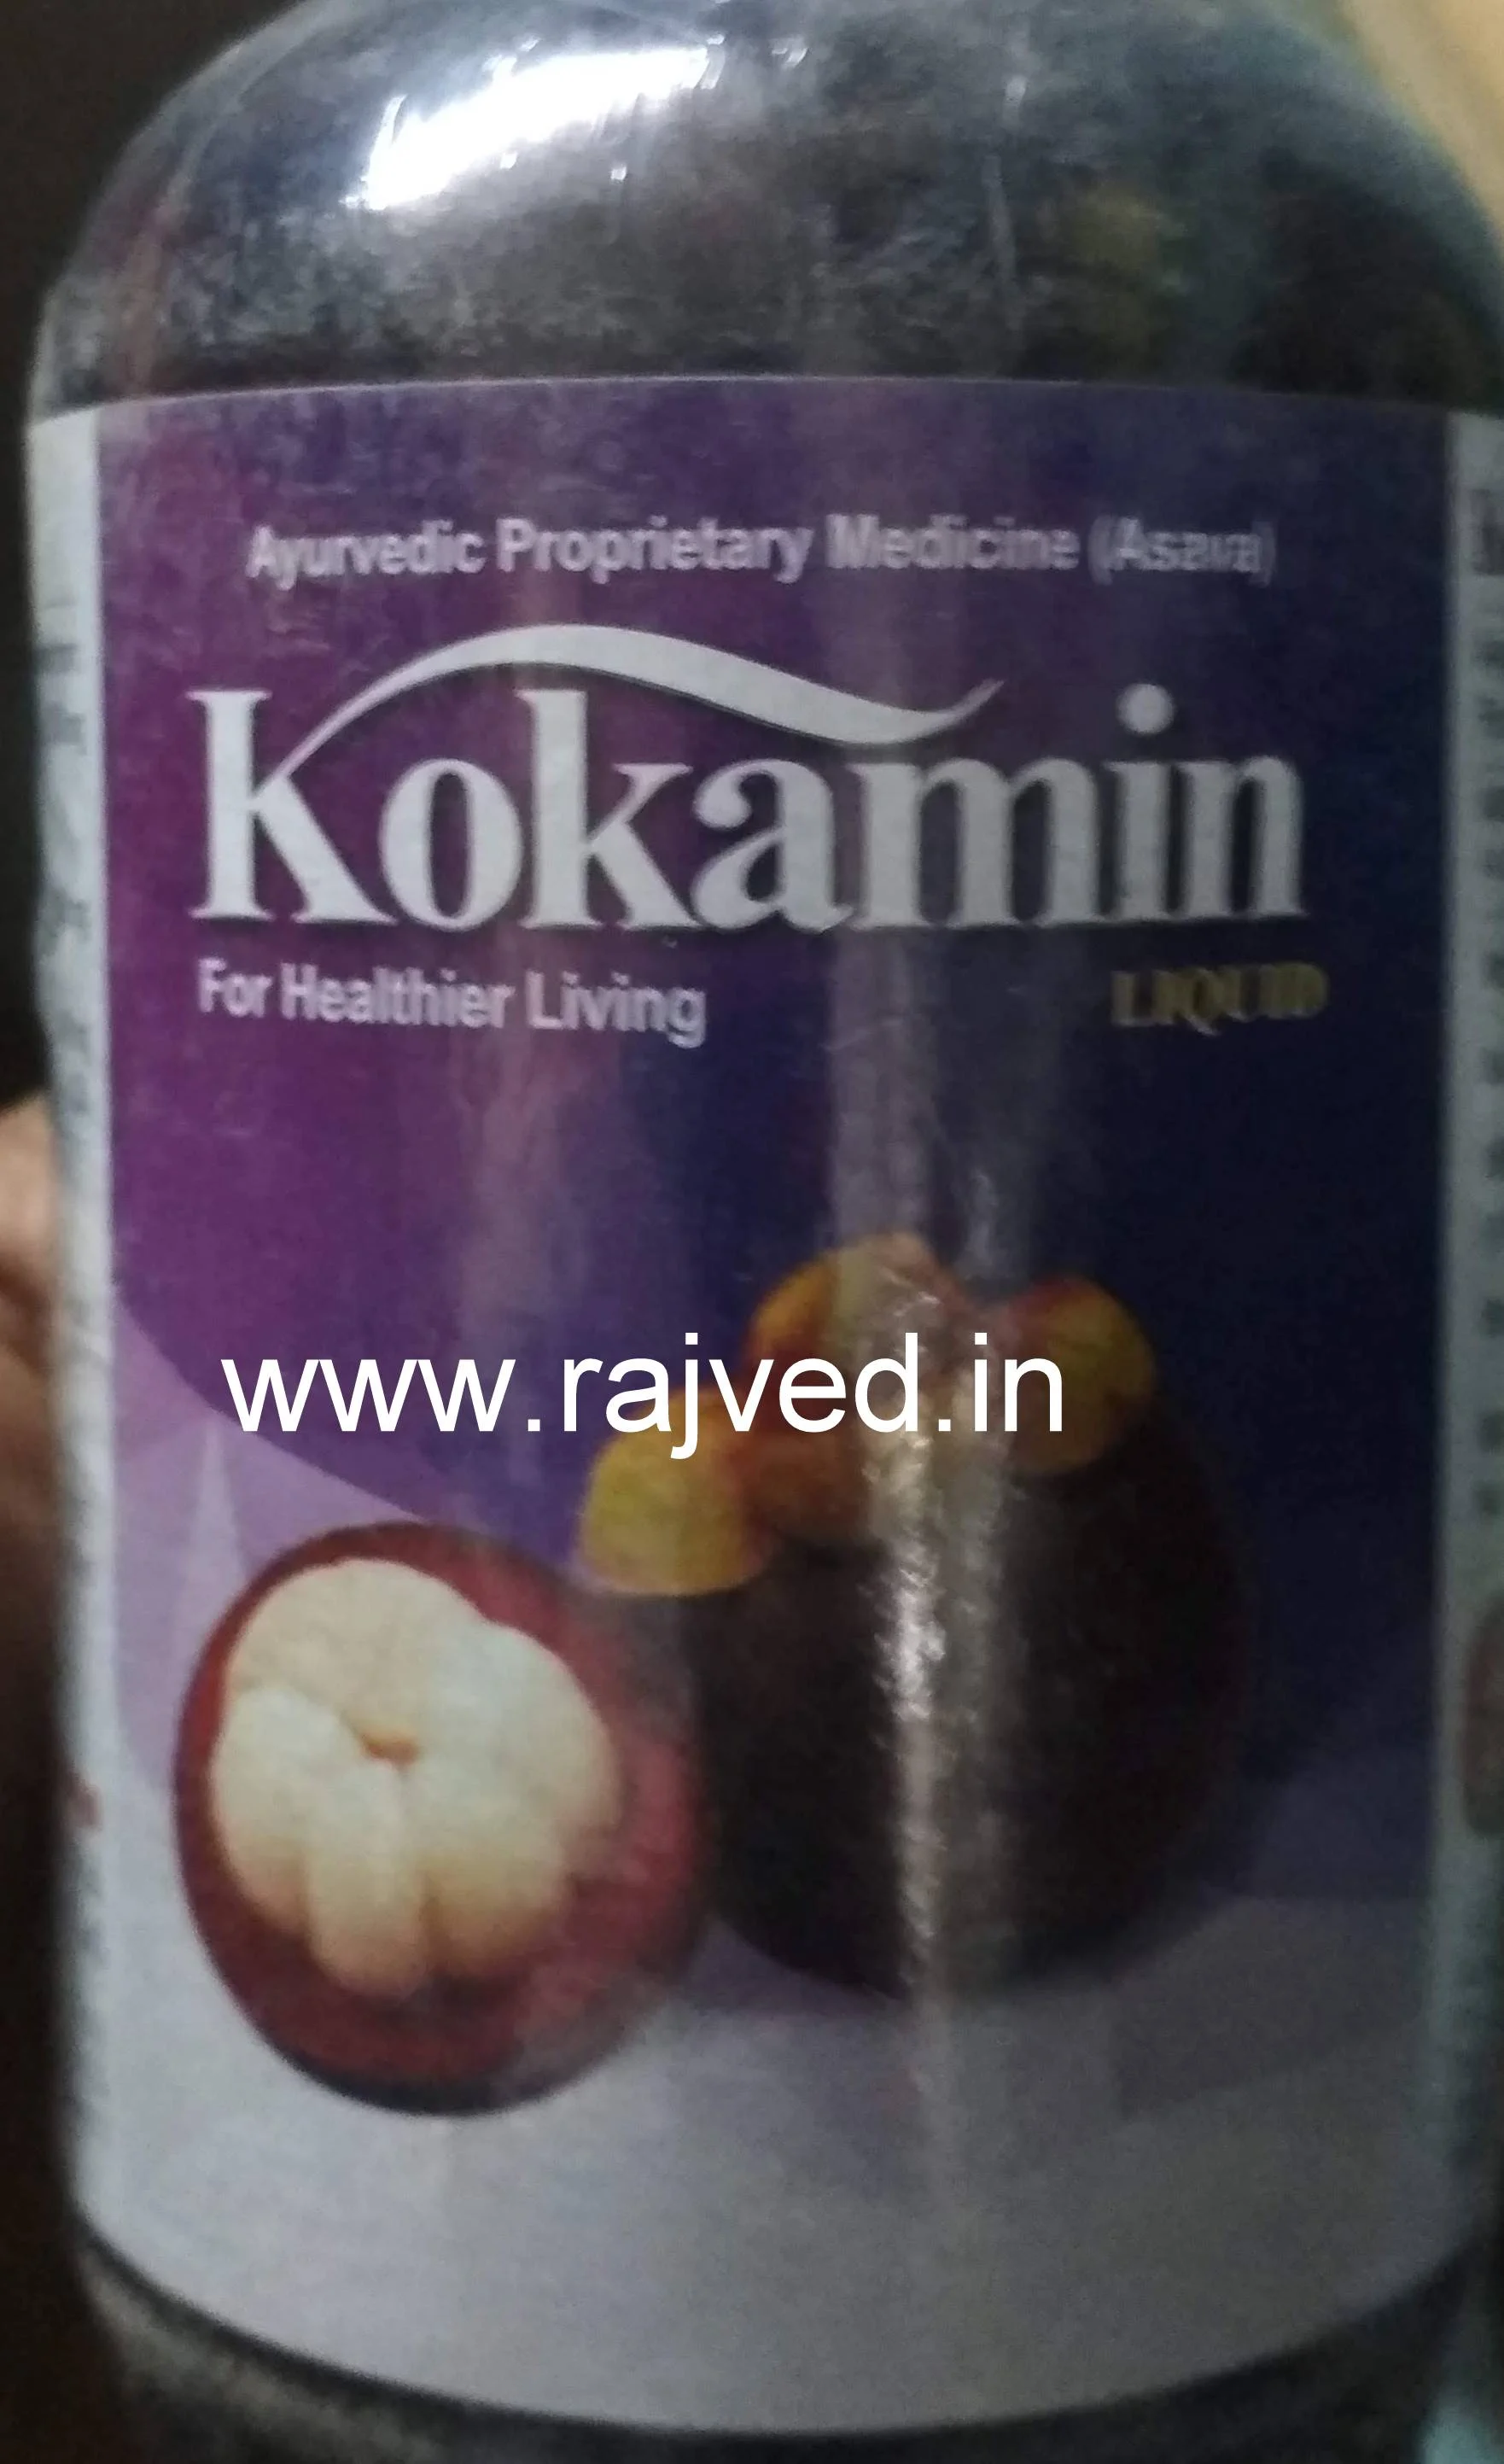 kokamin 500 ml Nityam Dipakam Pharma Pvt Ltd